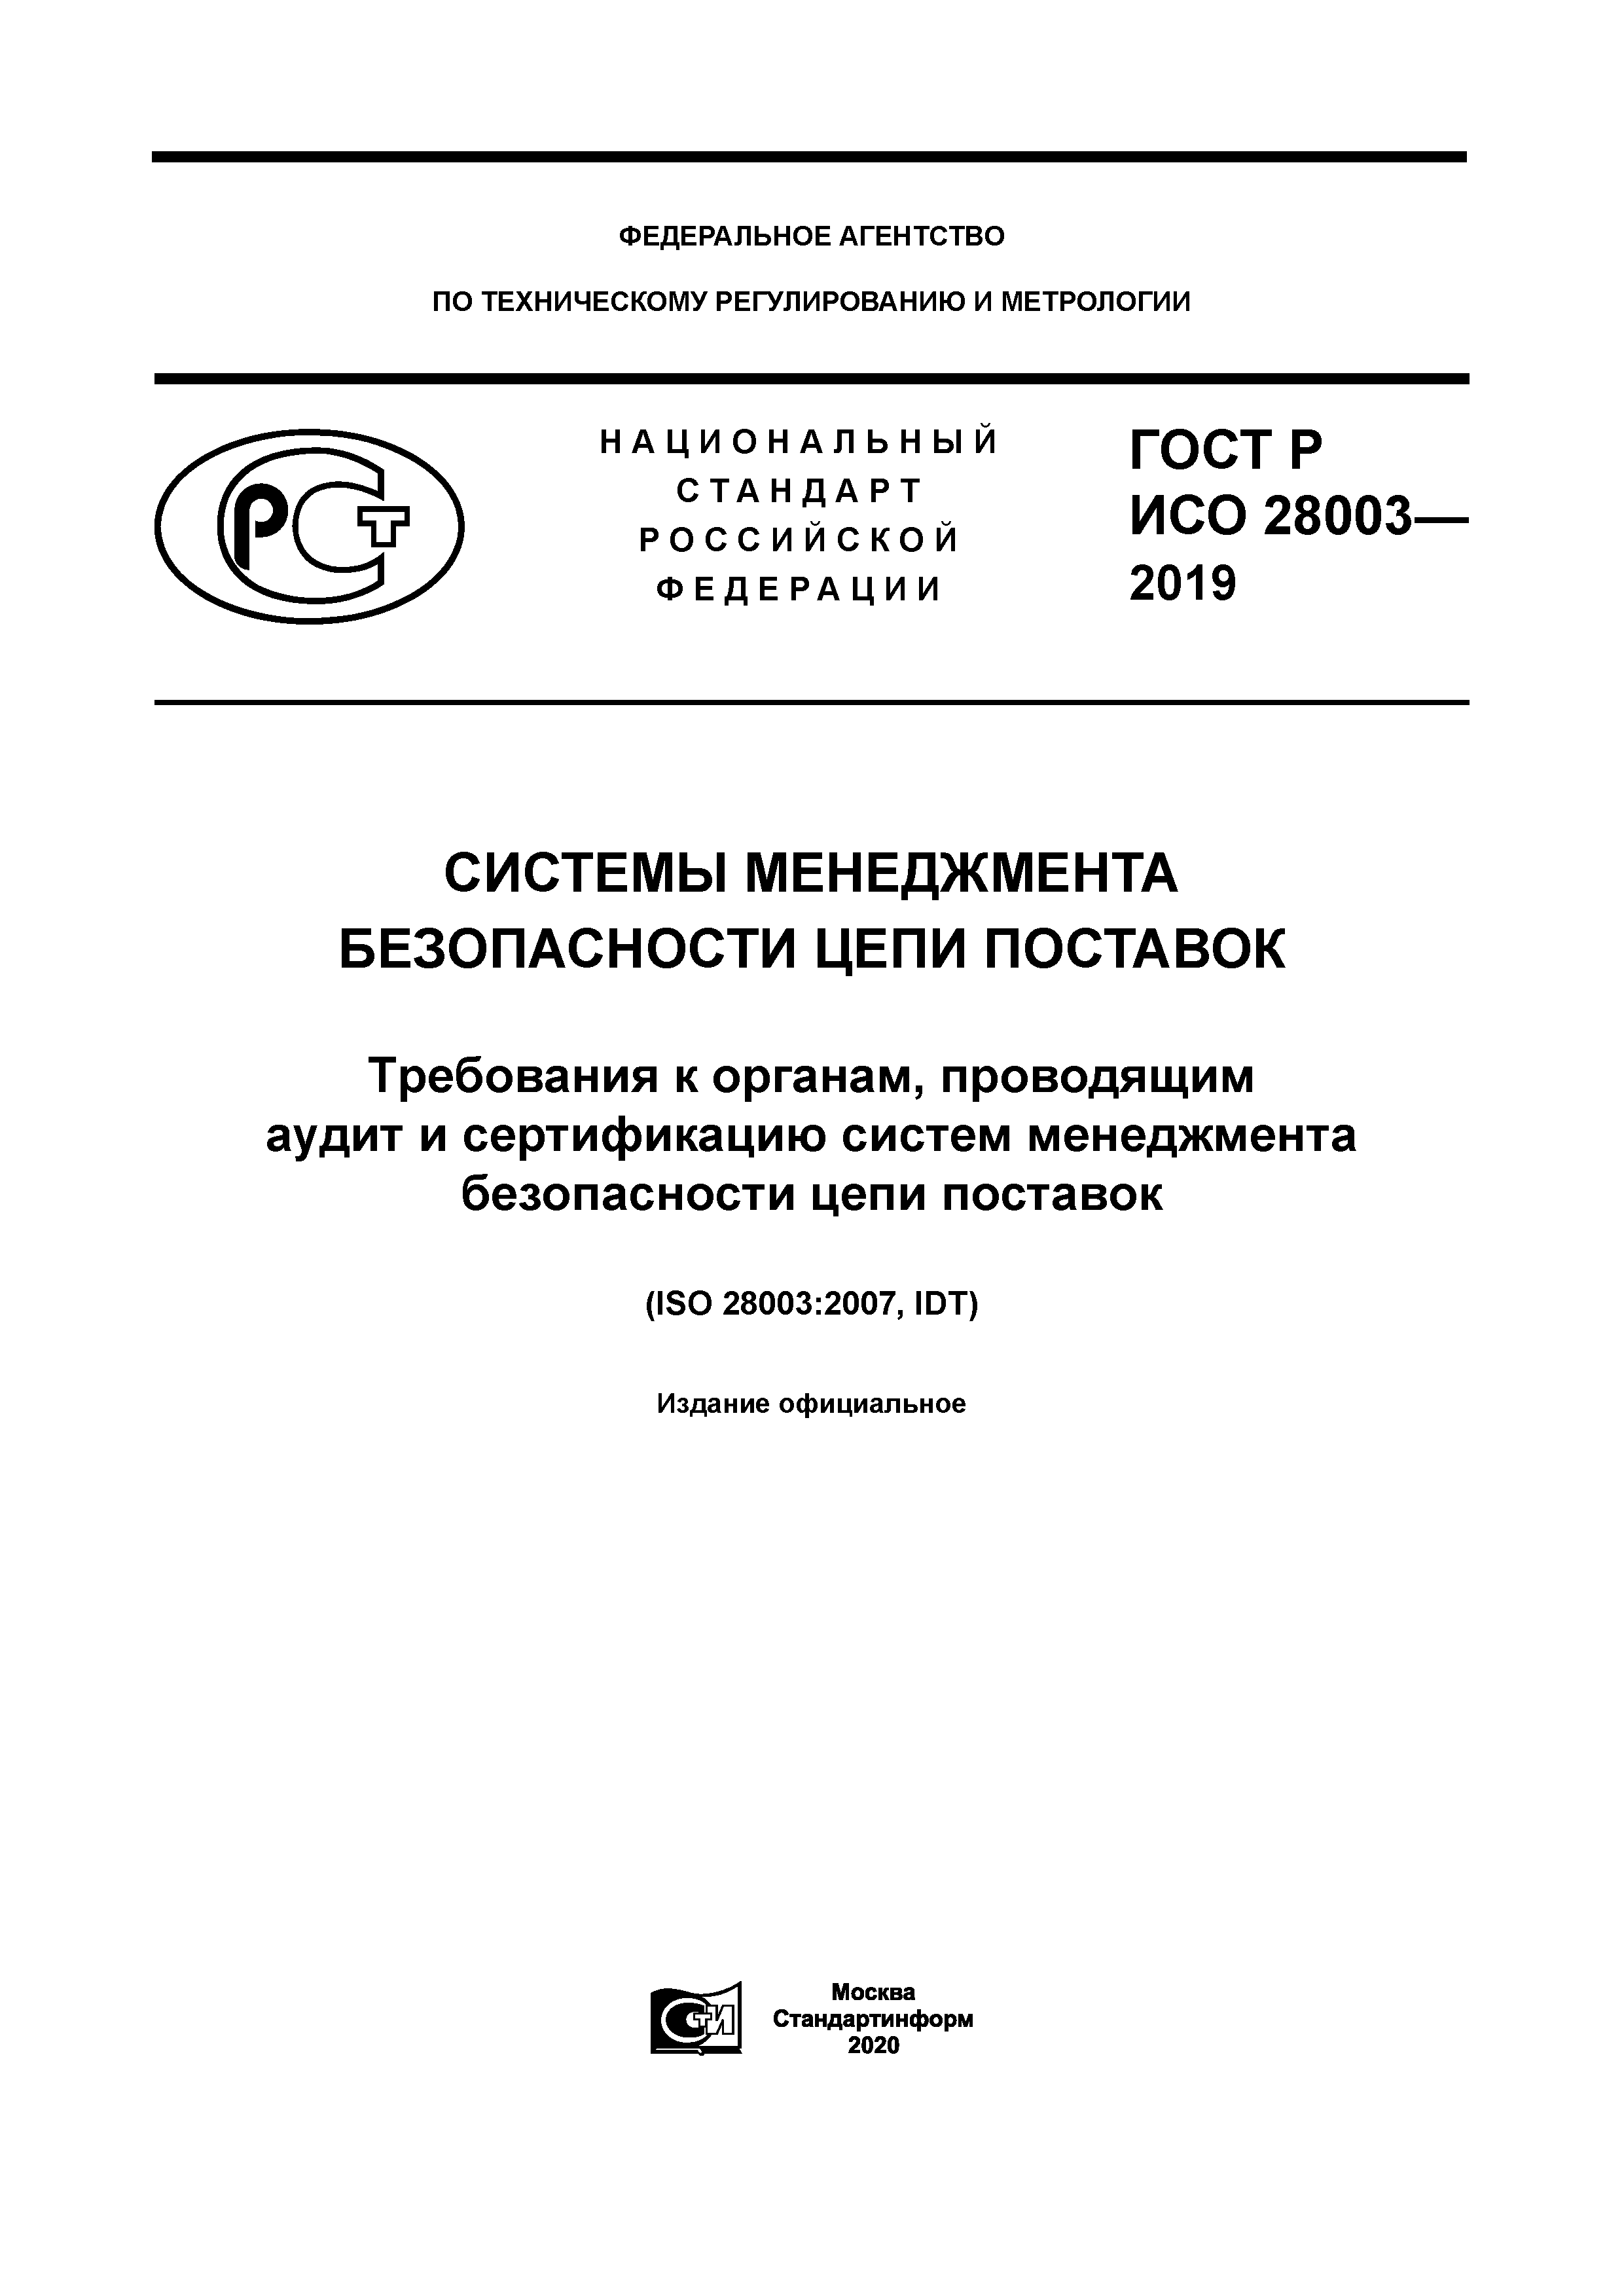 ГОСТ Р ИСО 28003-2019